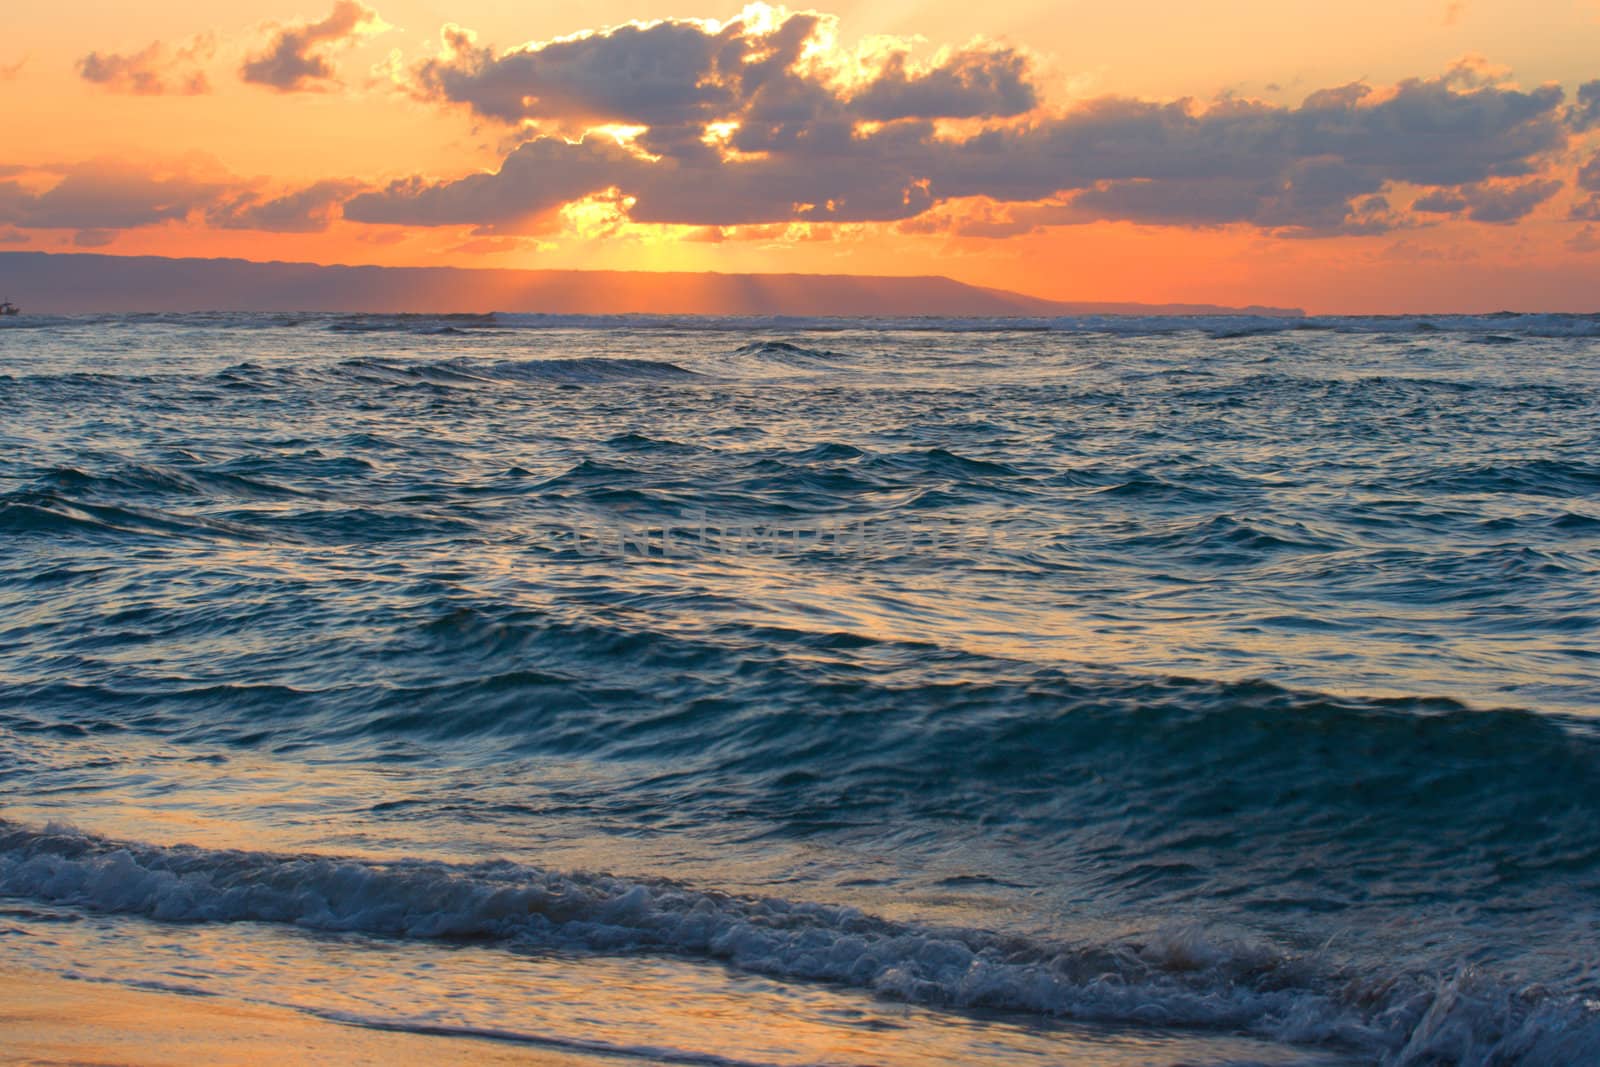 Calm peaceful ocean and beach on tropical sunrise